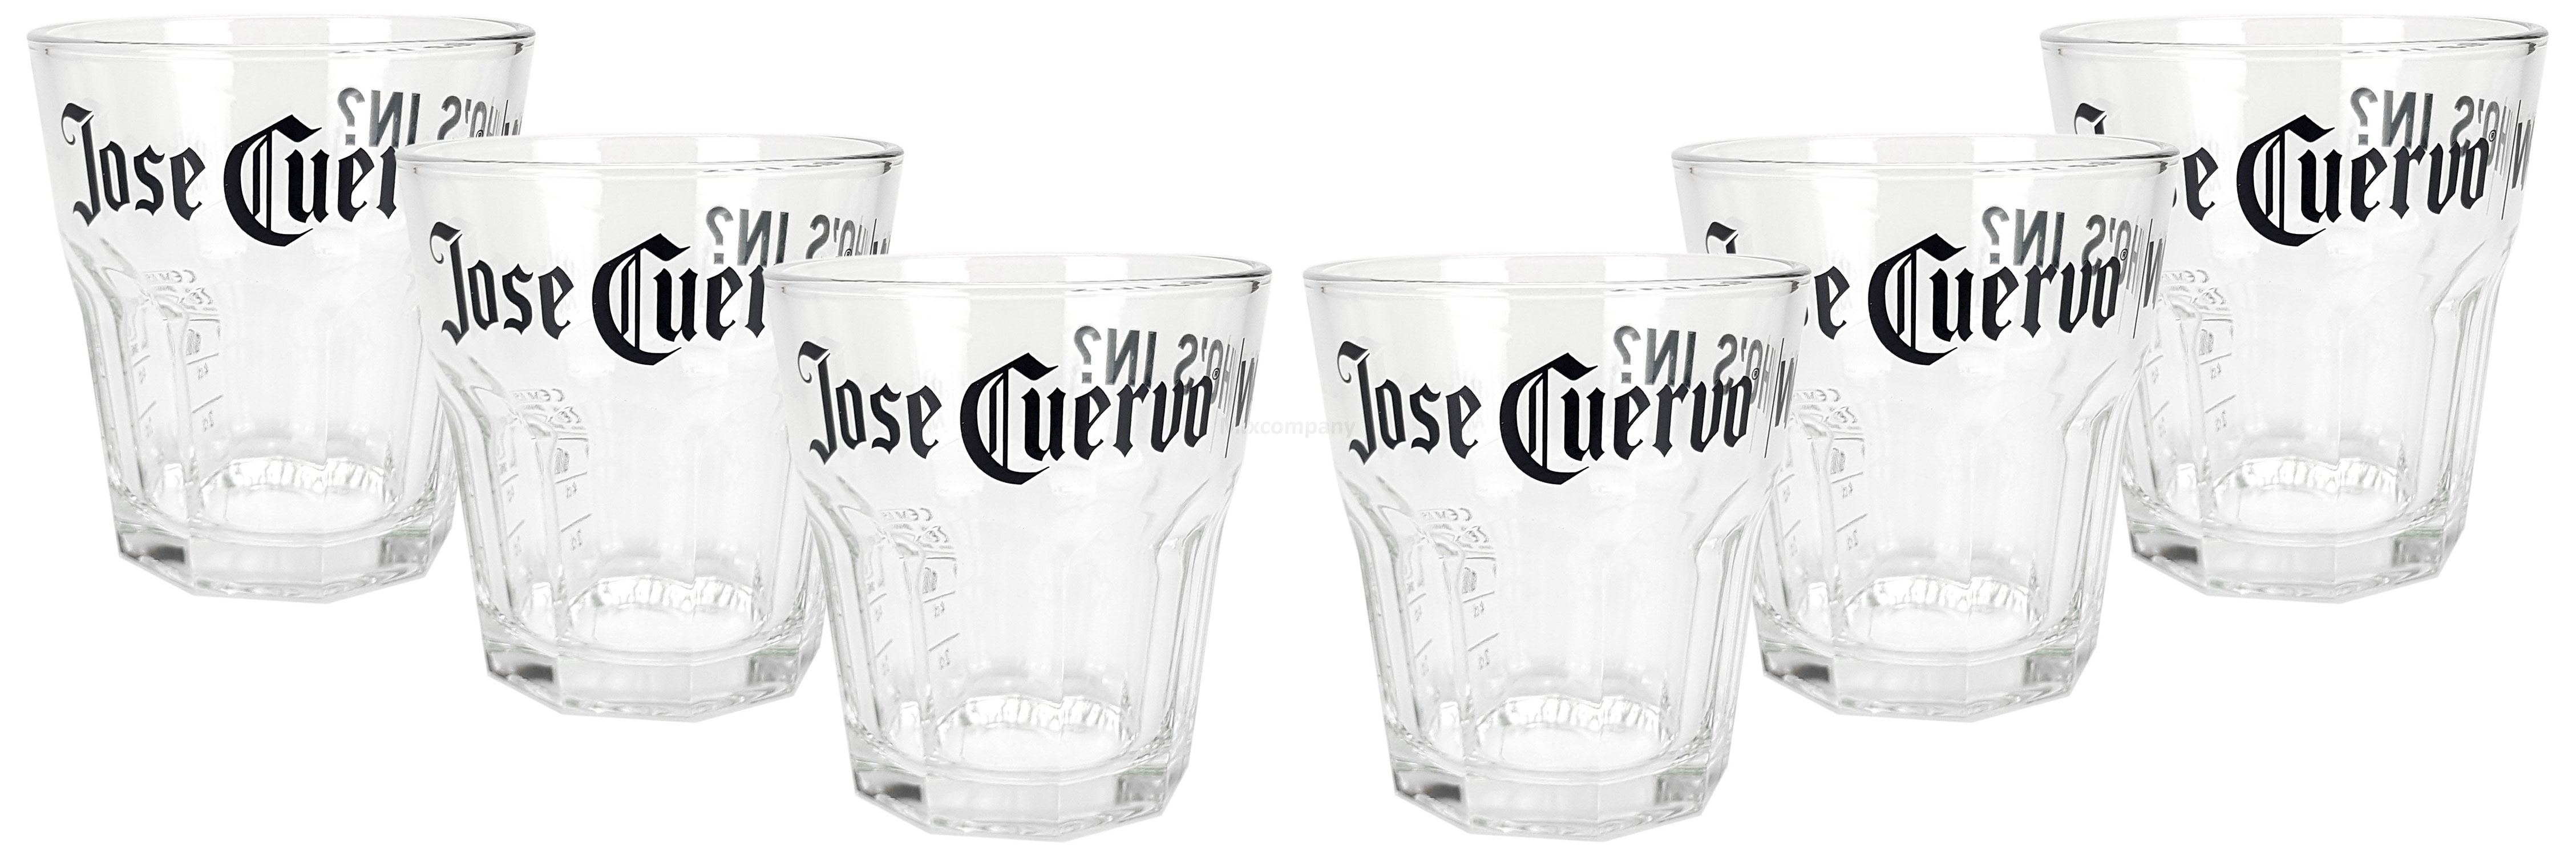 Jose Cuervo Tumbler Glas Gläser Set - 6x Tumblergläser 2/4cl geeicht